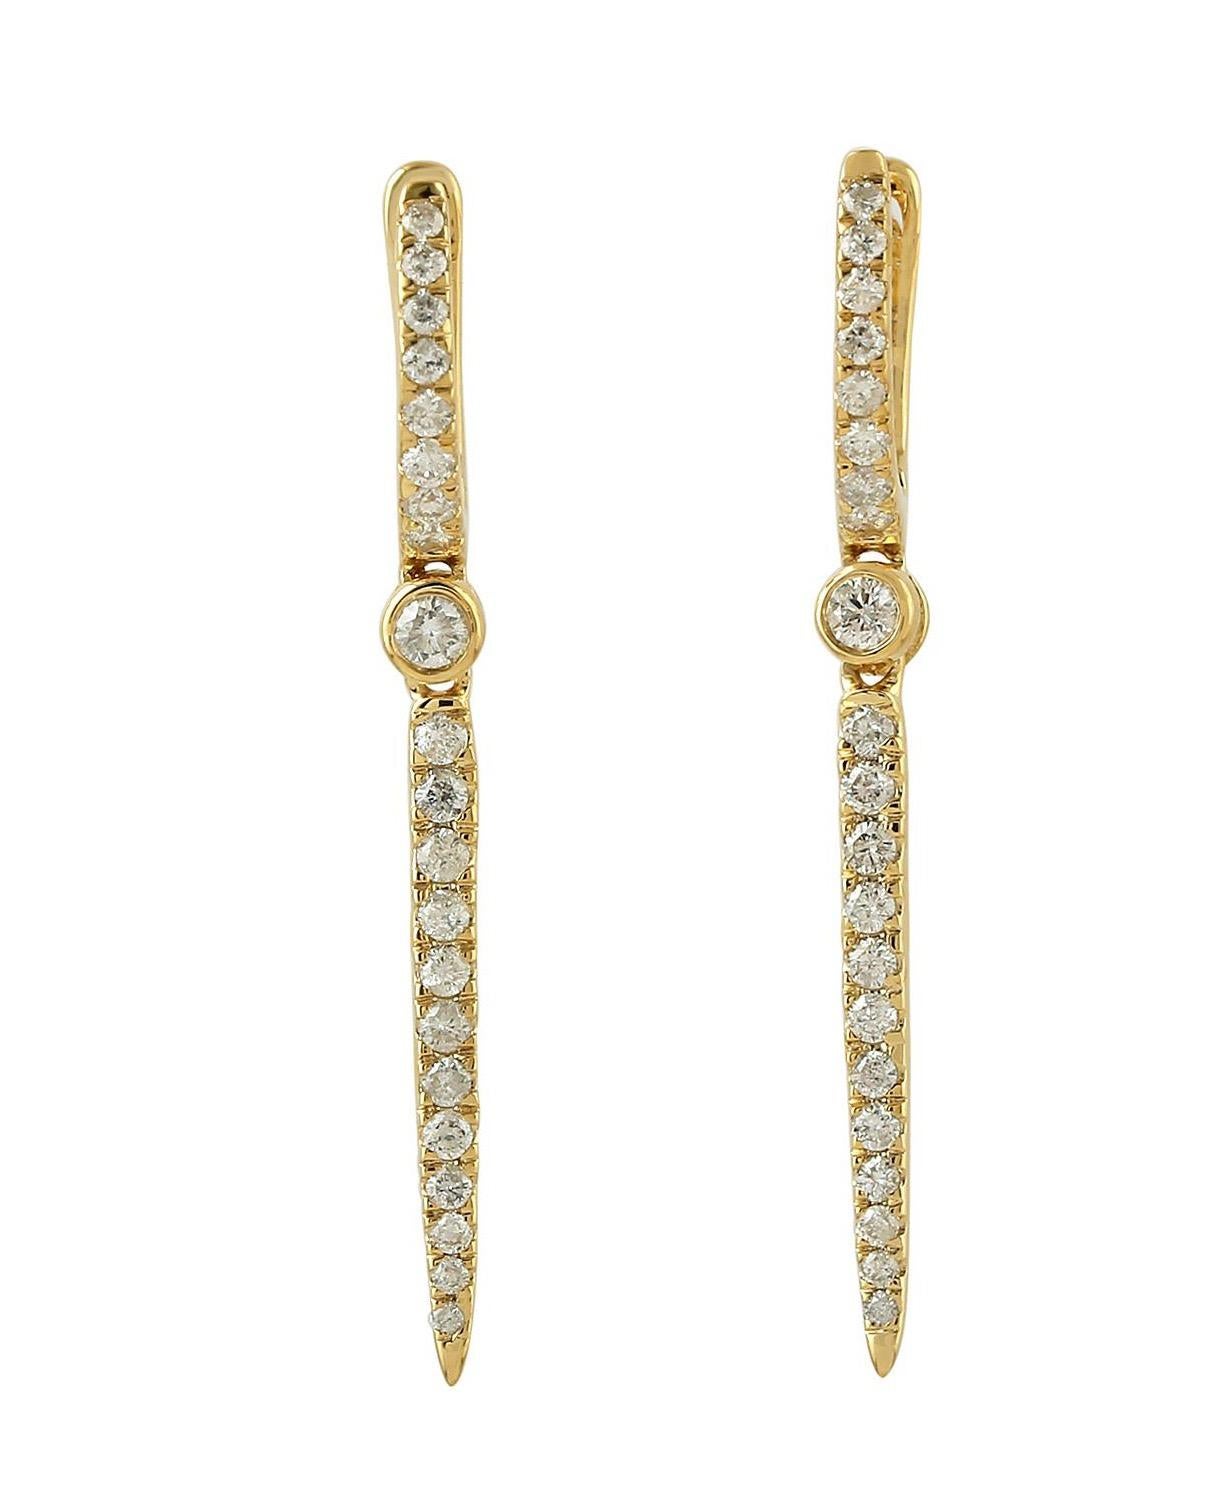 Fabriquées à la main en or 14 carats, ces magnifiques boucles d'oreilles linéaires sont serties de diamants étincelants de 0,49 carats. Également disponible en or blanc et en or rose.

SUIVRE  La vitrine de MEGHNA JEWELS pour découvrir la dernière